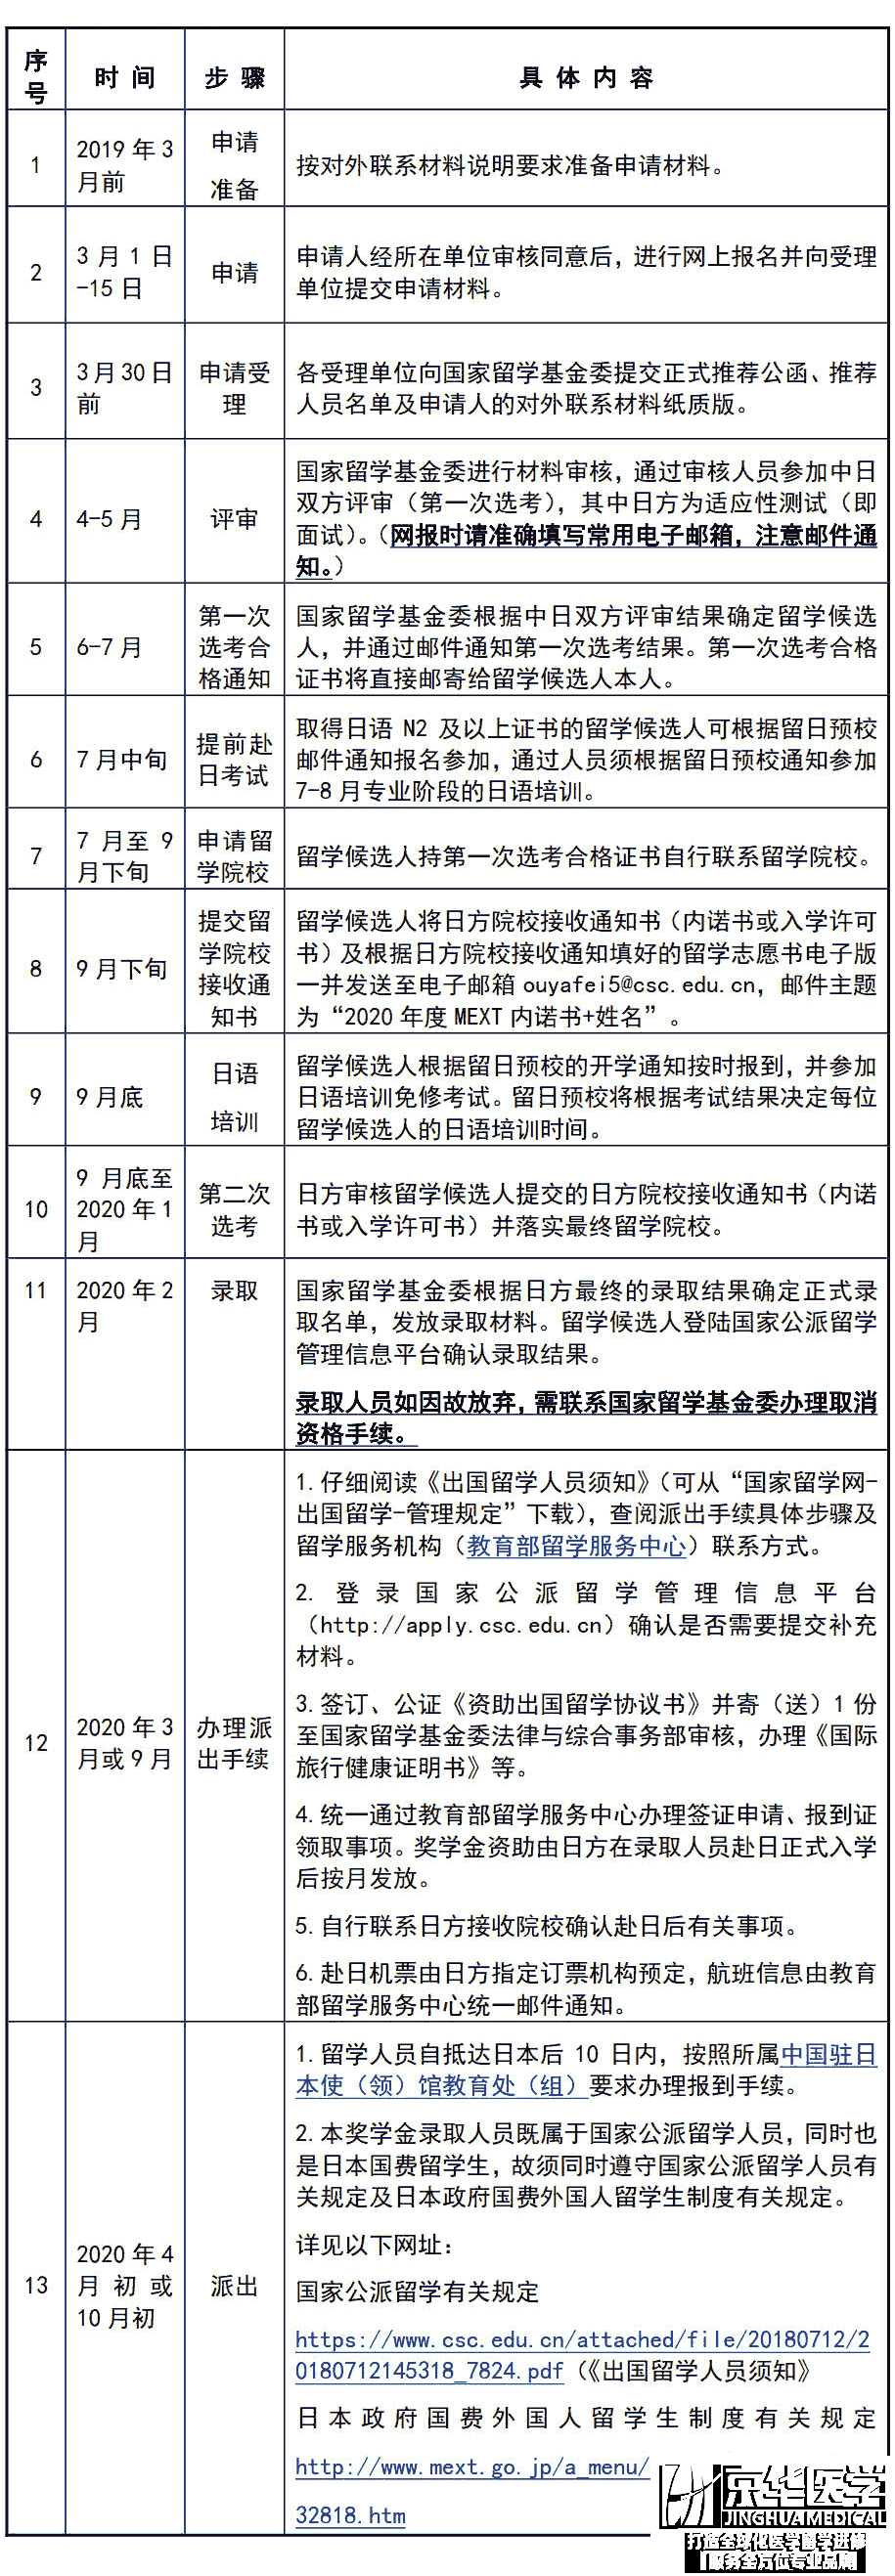 2020年日本政府（文部科学省）博士生奖学金